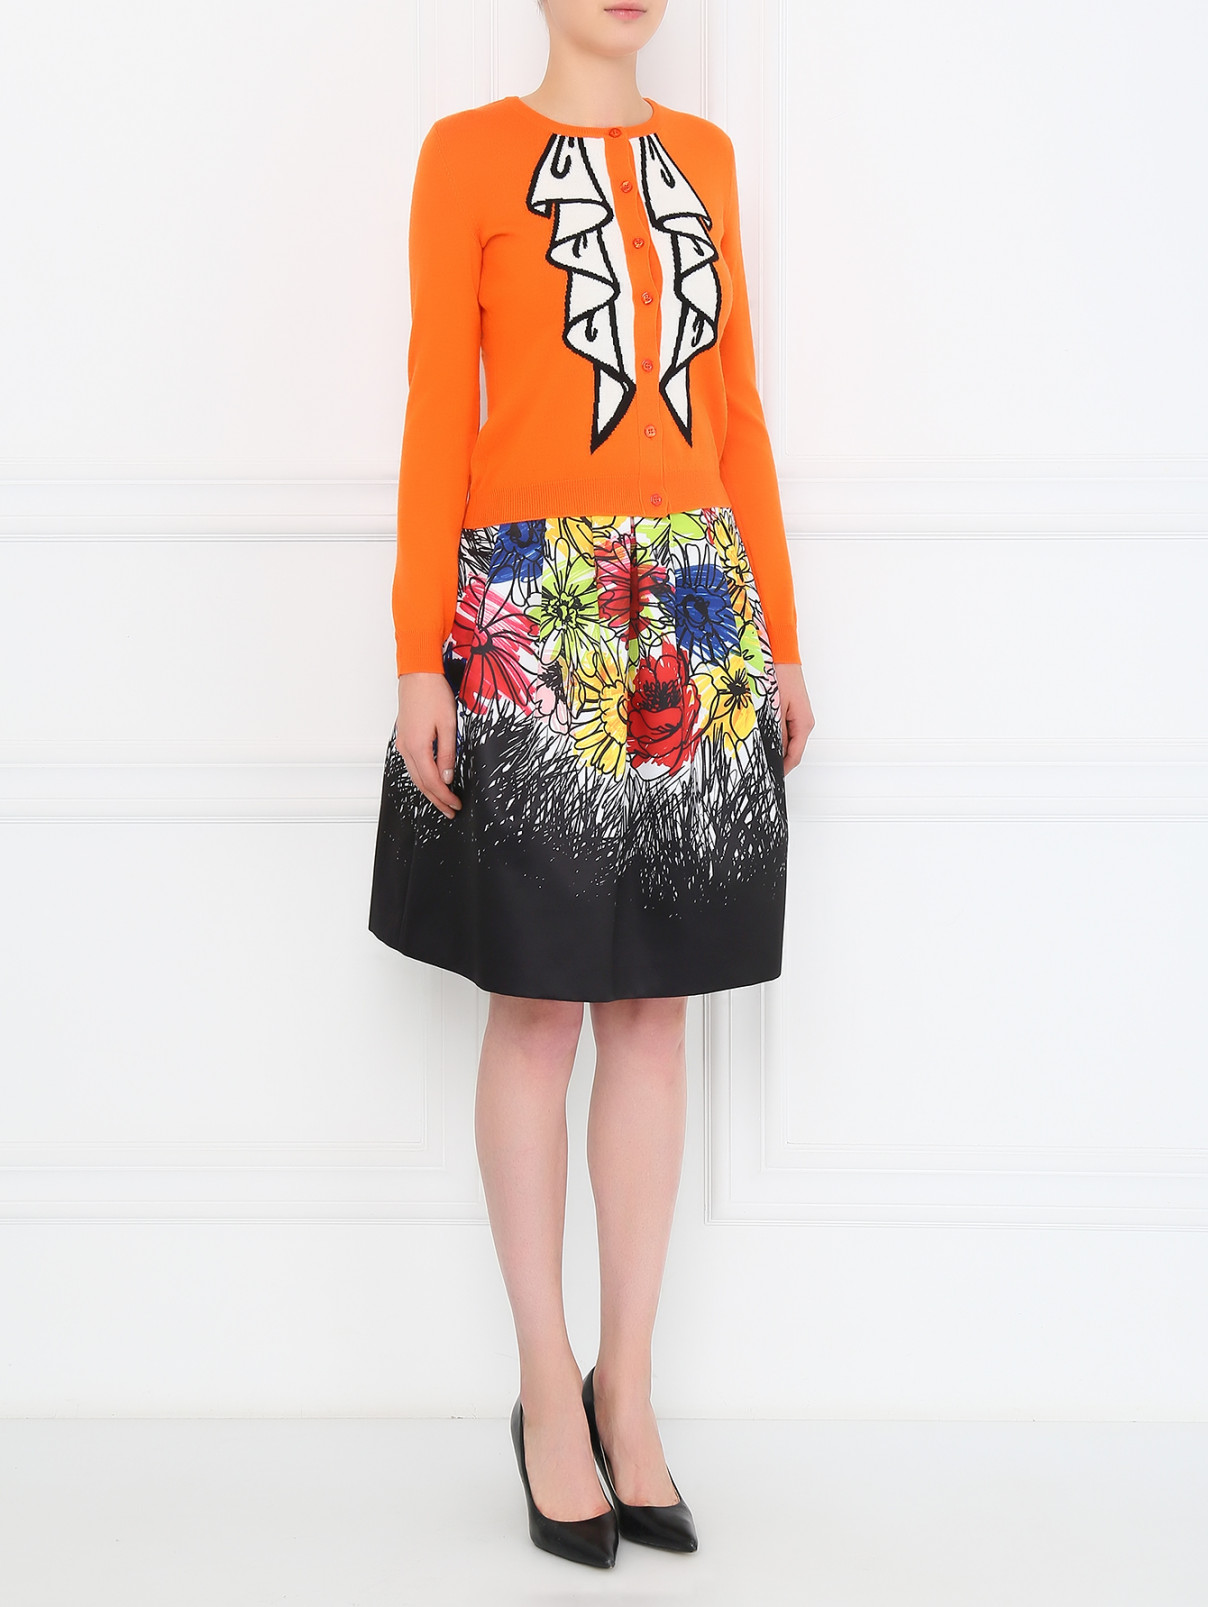 Кардиган из шерсти с принтом Moschino Boutique  –  Модель Общий вид  – Цвет:  Оранжевый